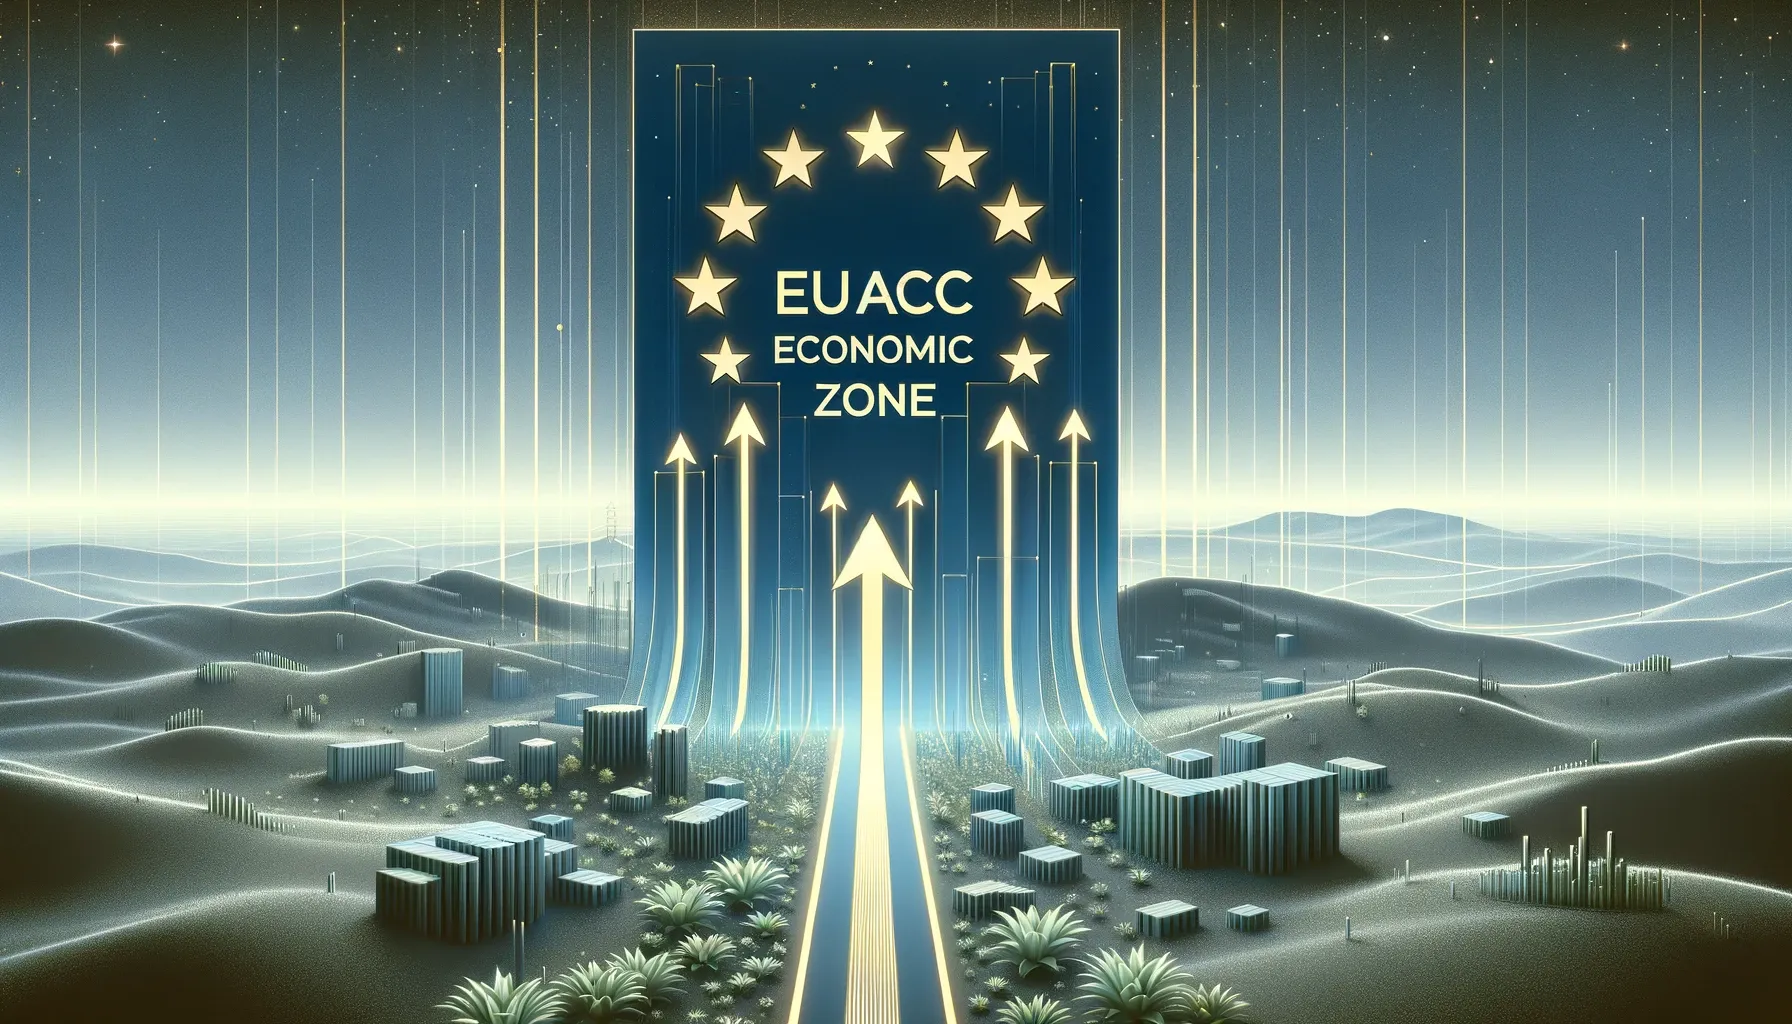 Eu/Acc Economic Zones